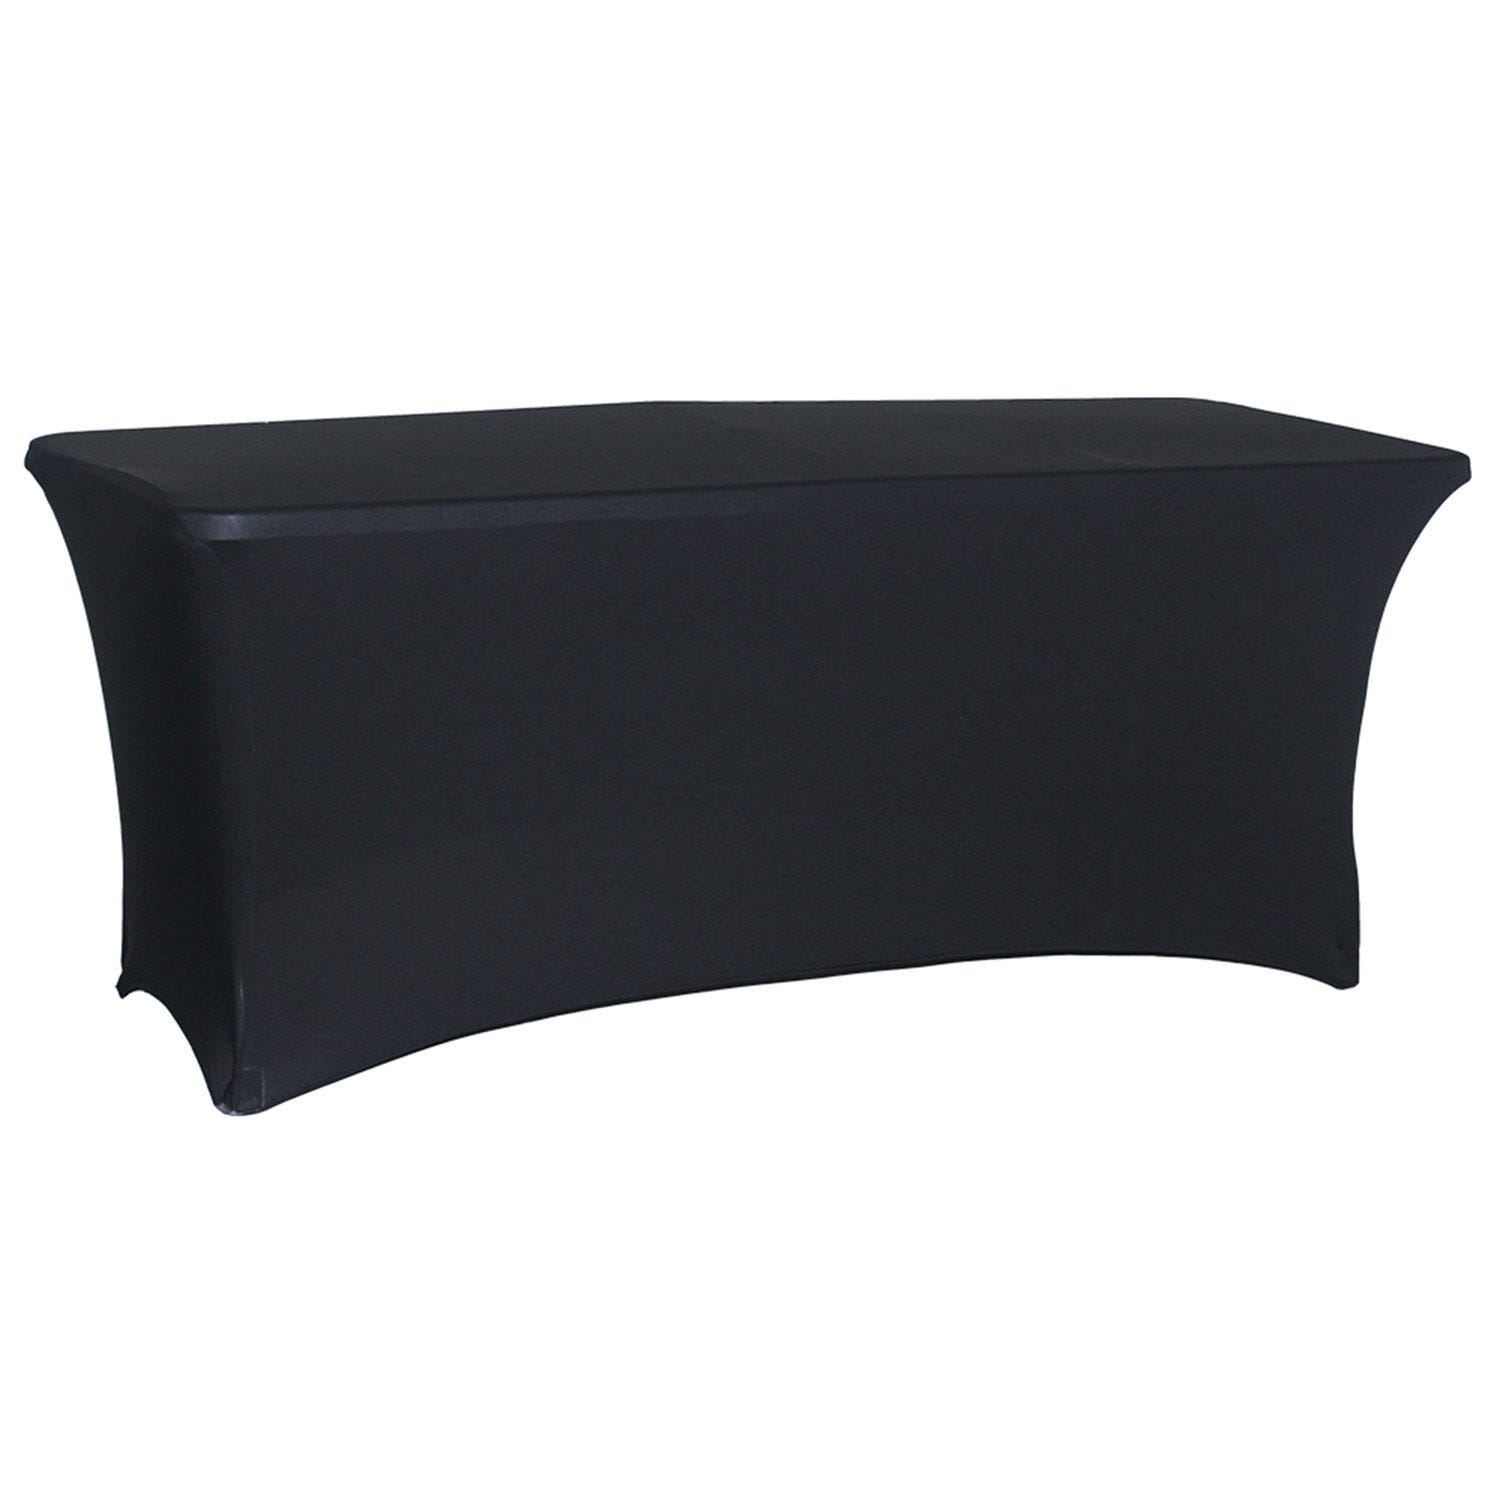 Housse de protection pour Table Rectangulaire 240x74x74cm RDM Design&Basic